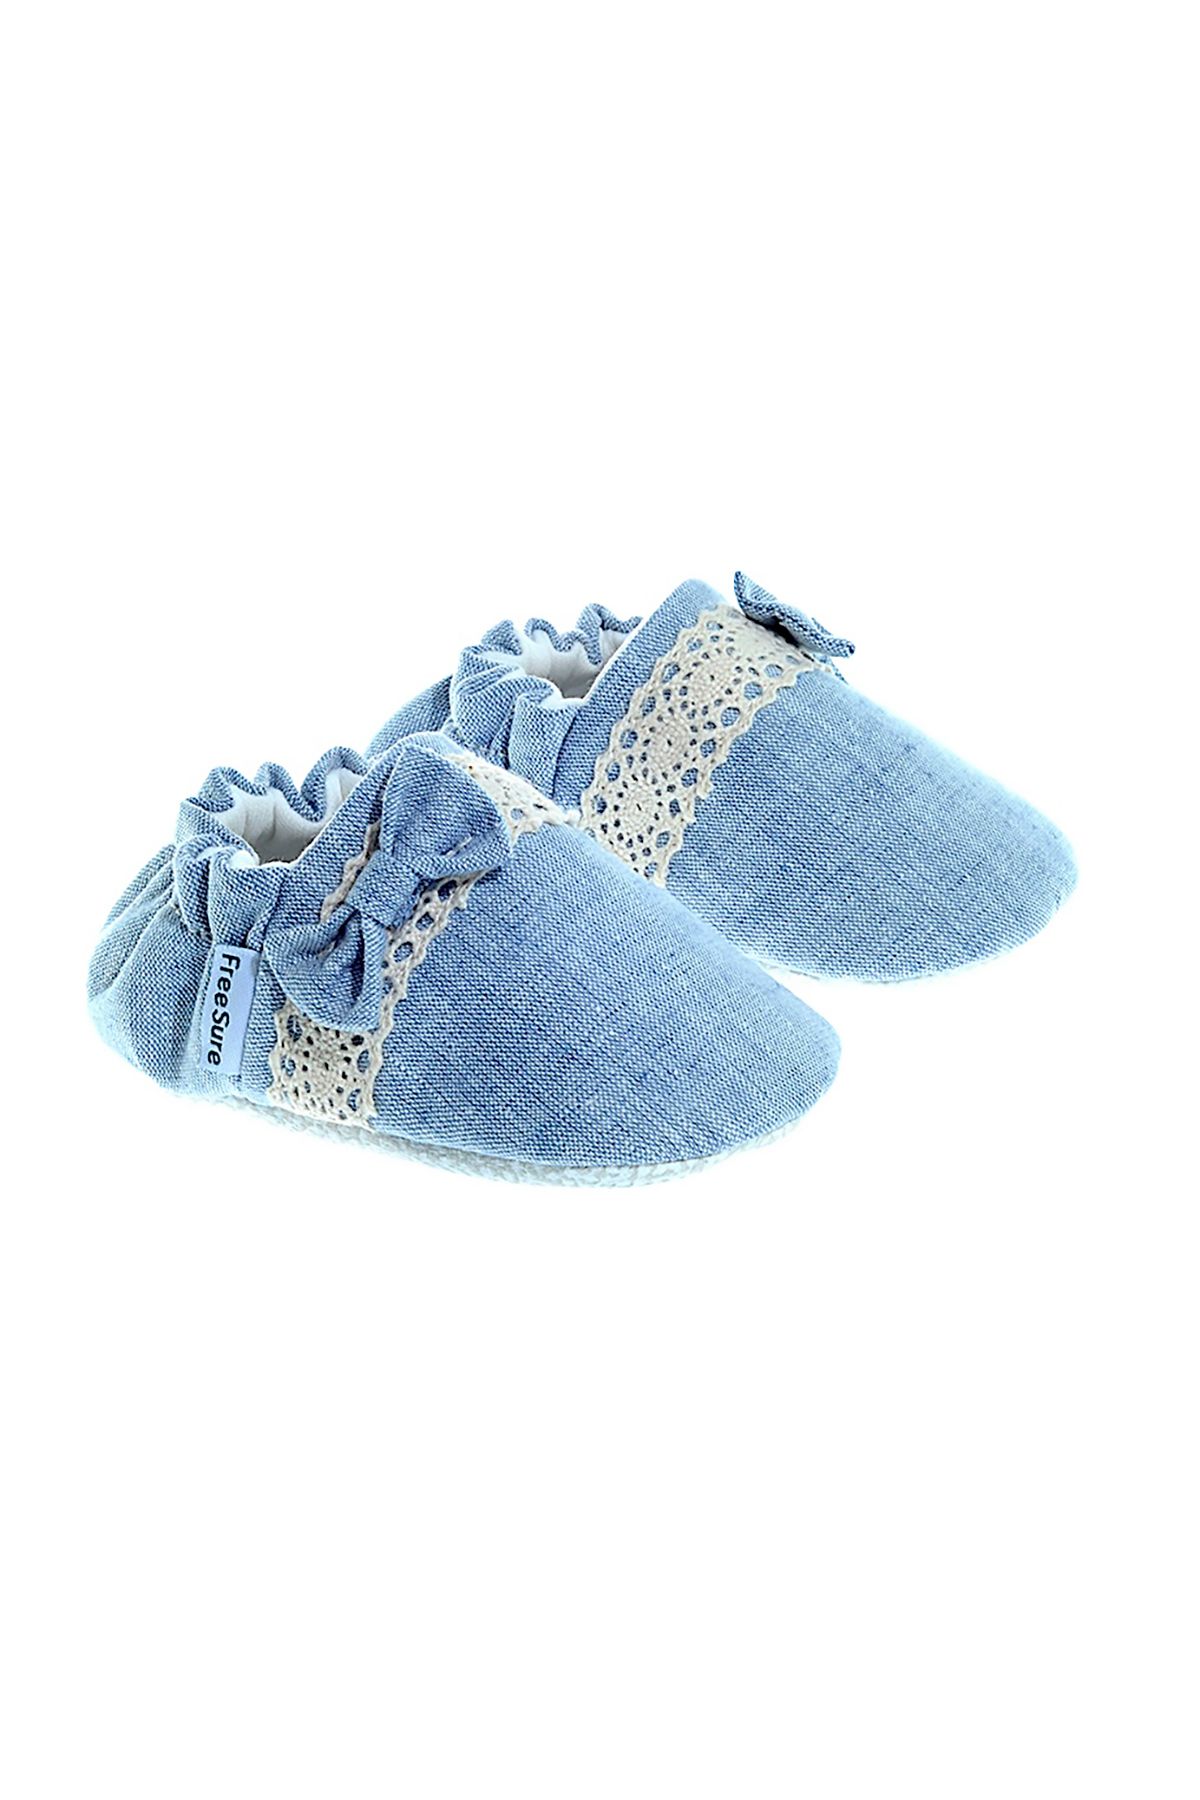 Freesure 241150 Mavi Kız Bebek Patiği, Bebek Ayakkabısı, Kaymaz Taban